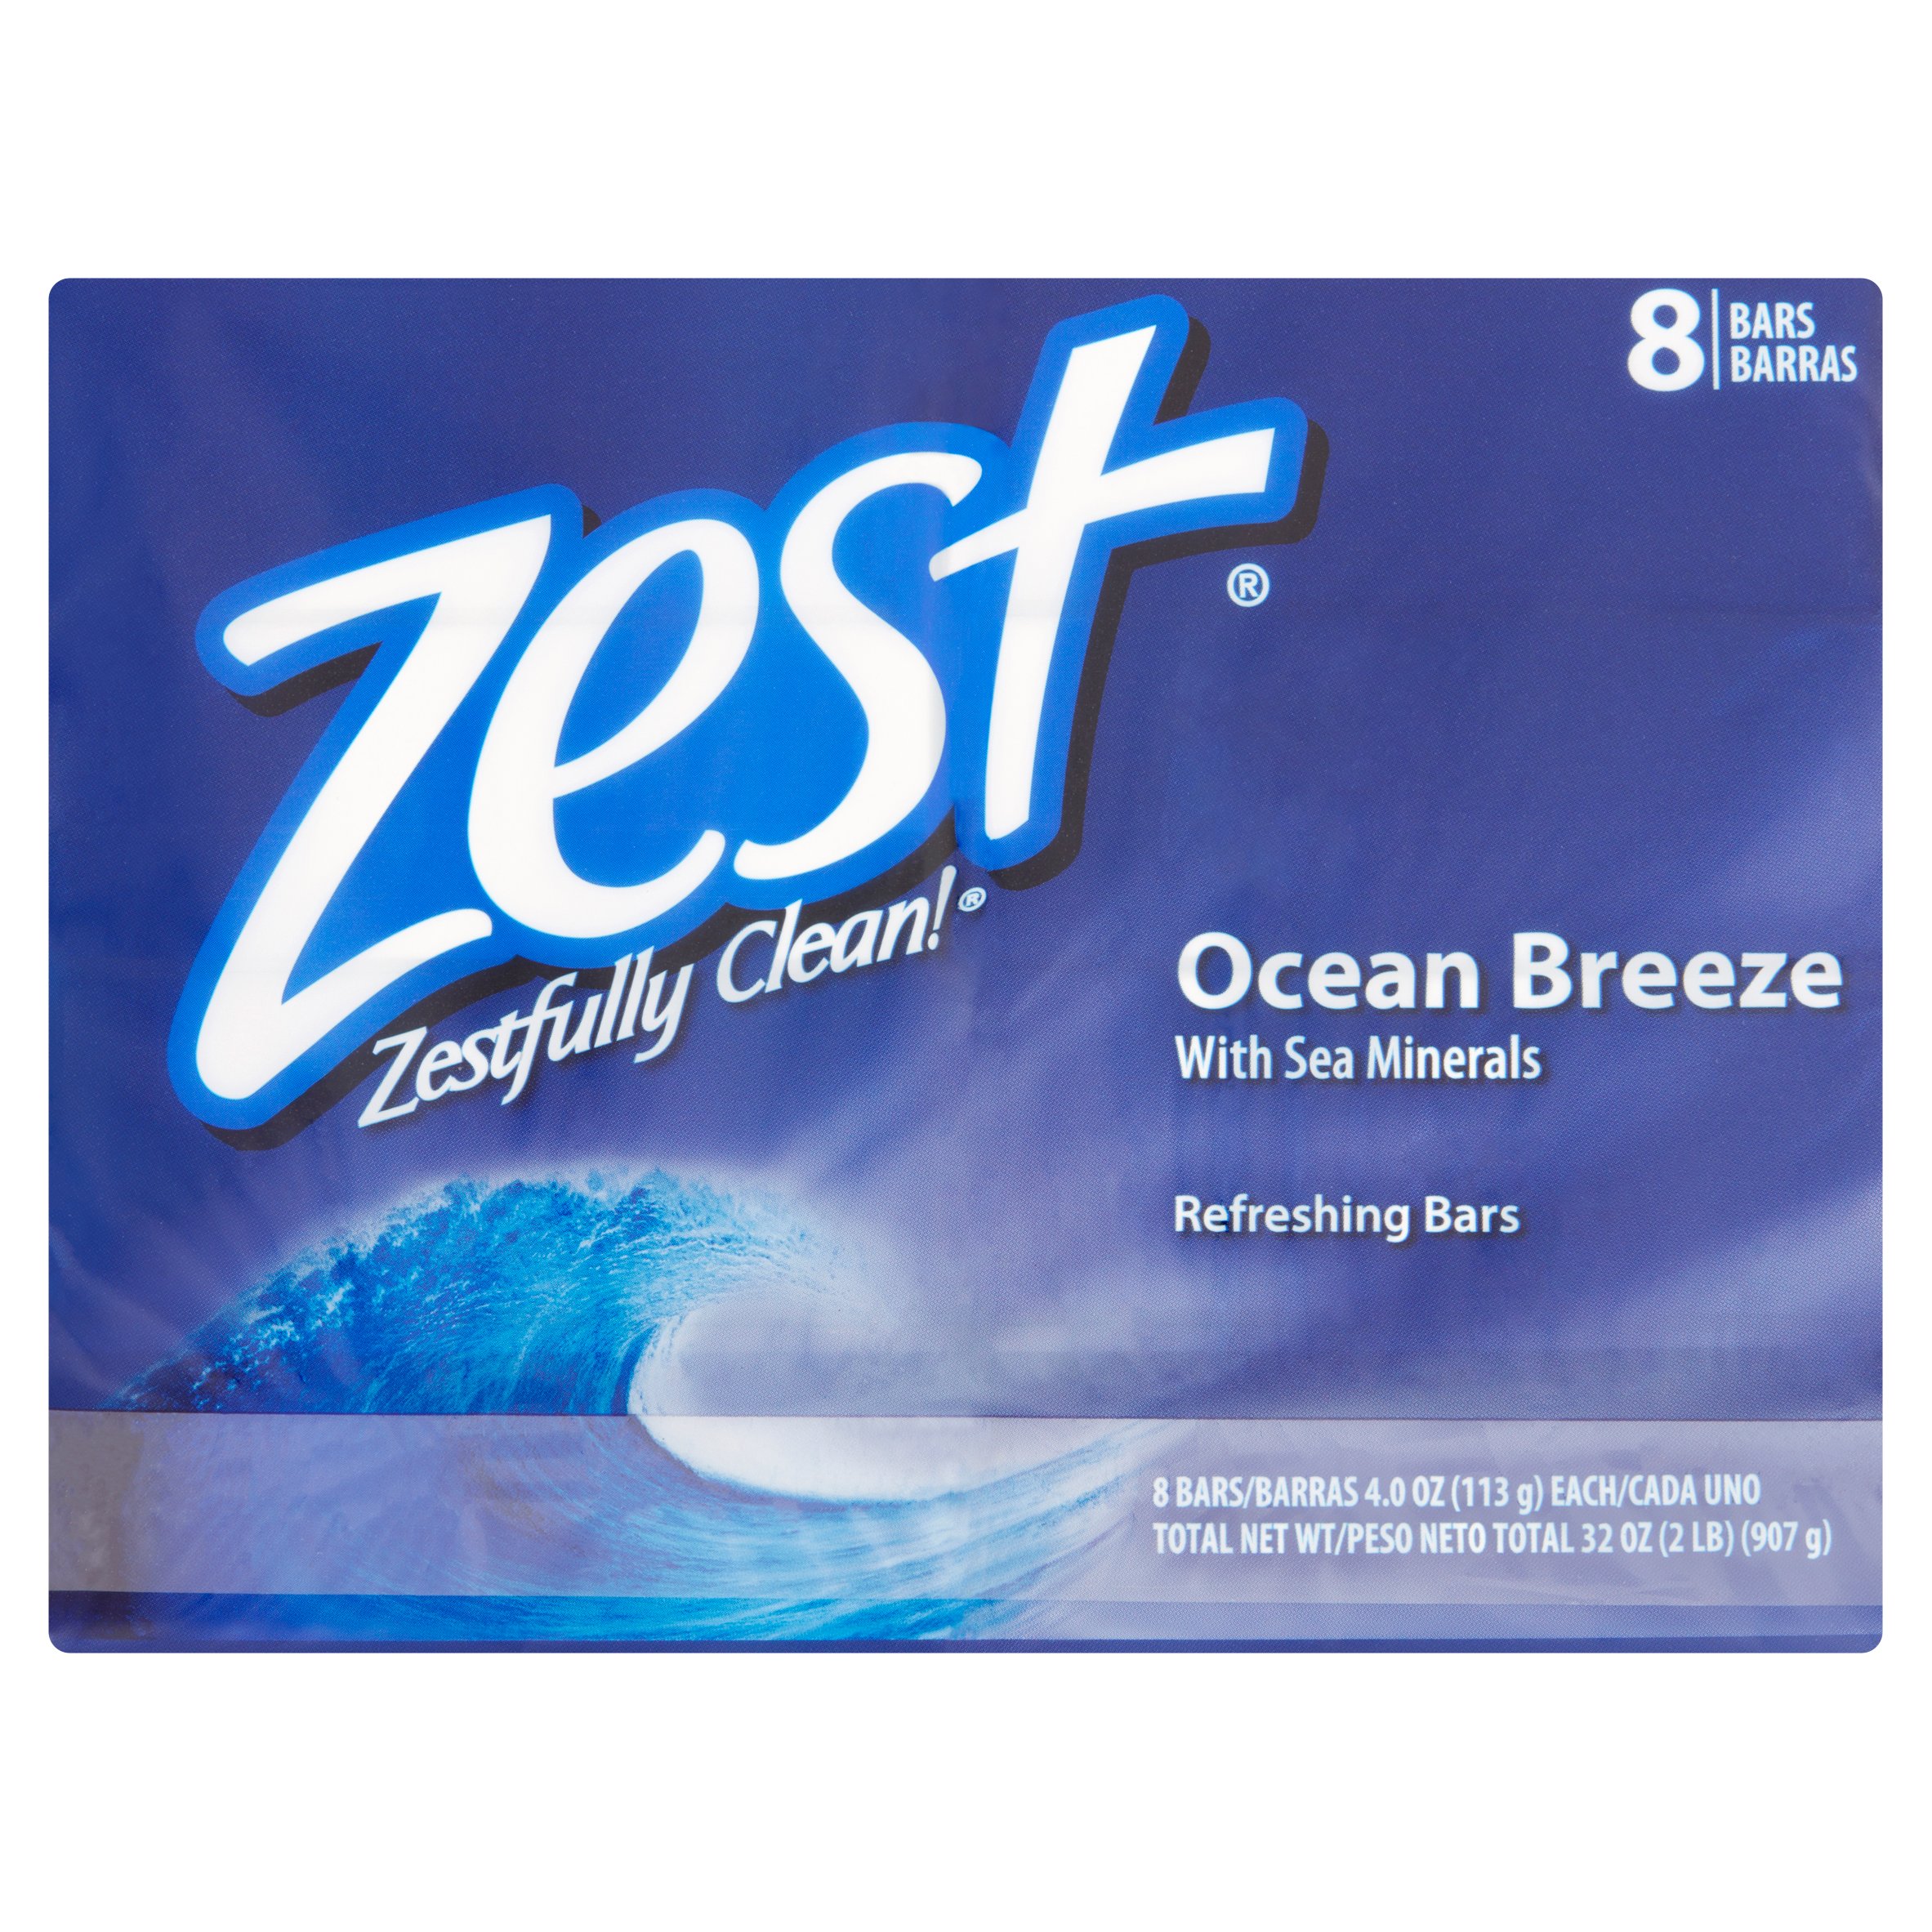 Zest Zestfully Clean! Ocean Breeze Refreshing Bars, 4.0 oz, 8 count - image 4 of 4